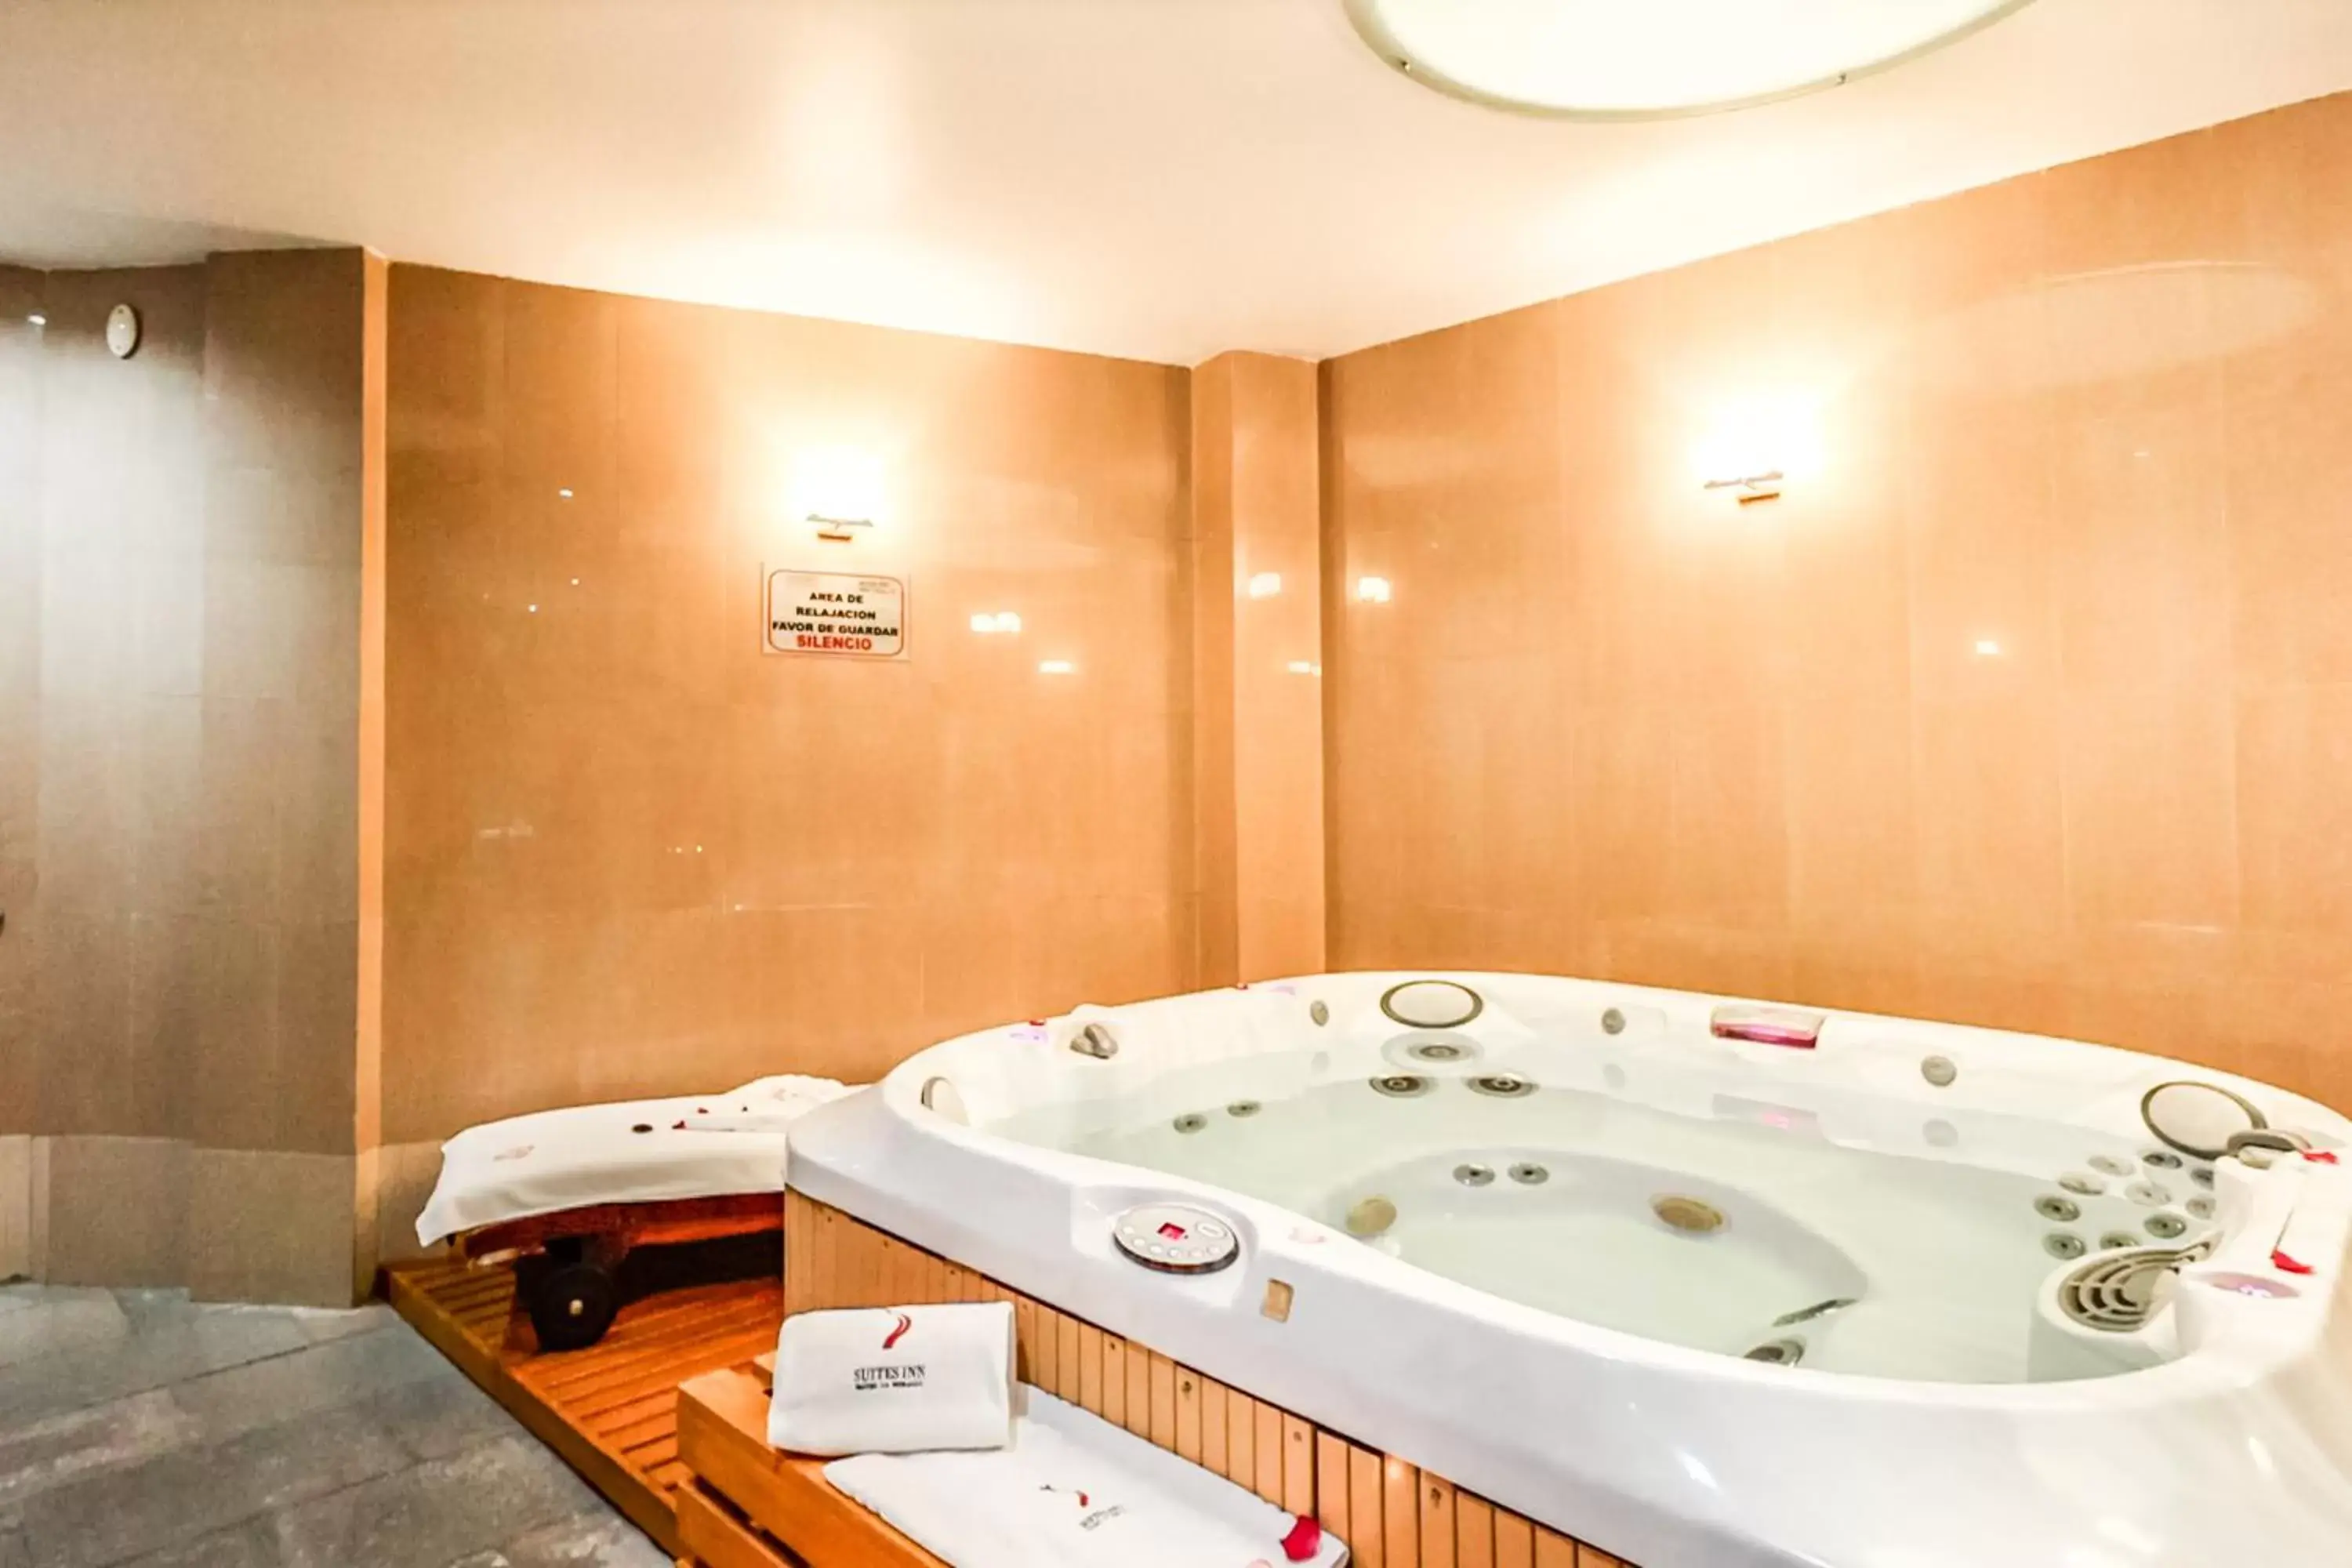 Spa and wellness centre/facilities, Bathroom in Suites Inn la Muralla Hotel & Spa